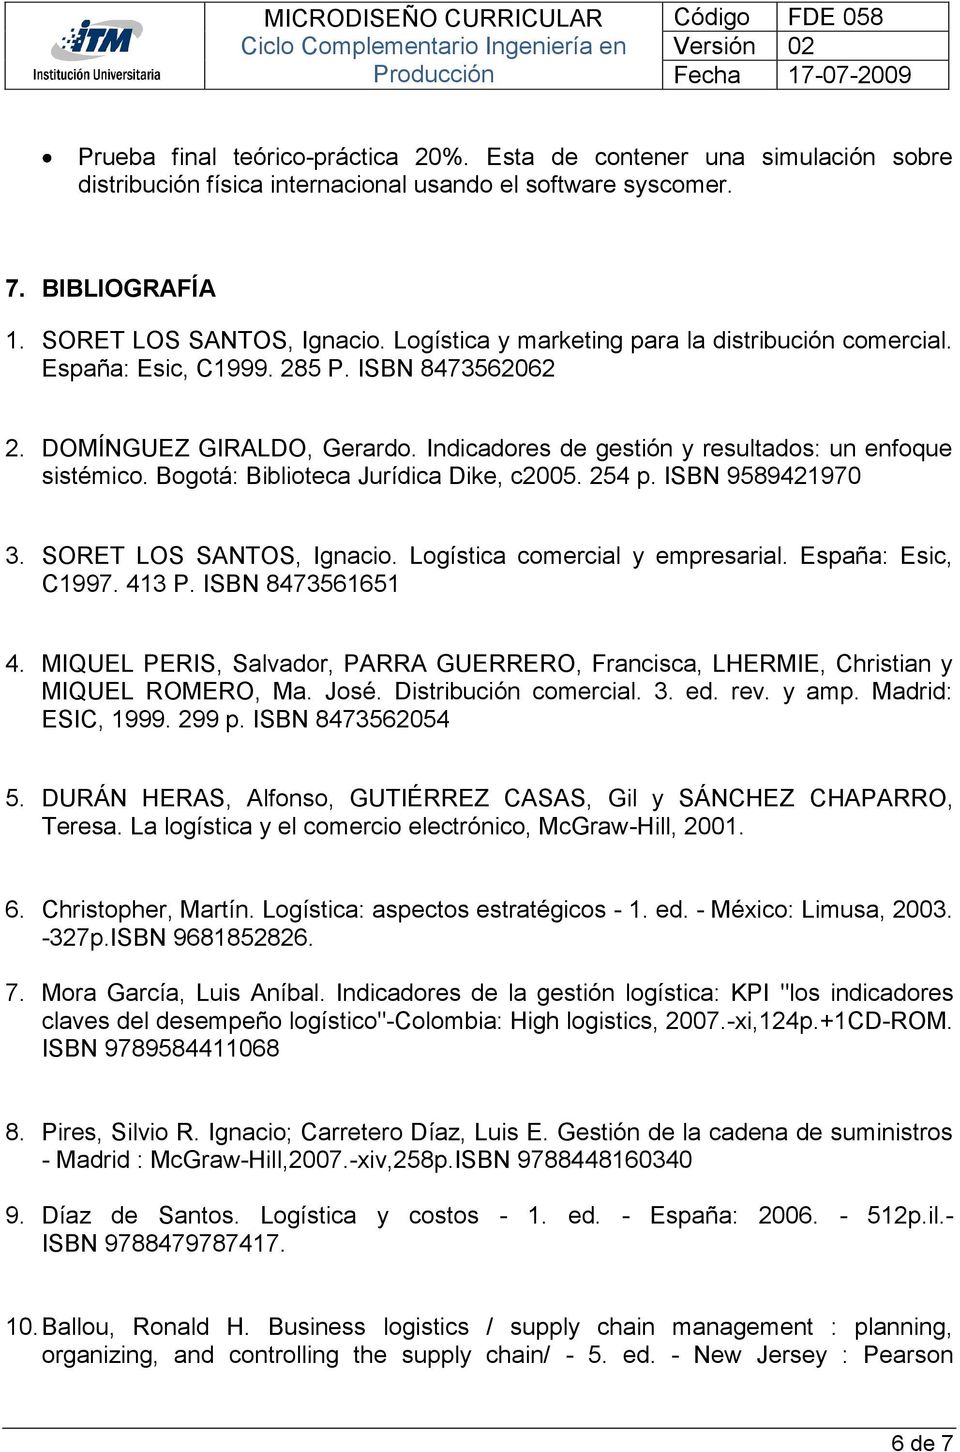 Bogotá: Biblioteca Jurídica Dike, c2005. 254 p. ISBN 9589421970 3. SORET LOS SANTOS, Ignacio. Logística comercial y empresarial. España: Esic, C1997. 413 P. ISBN 8473561651 4.